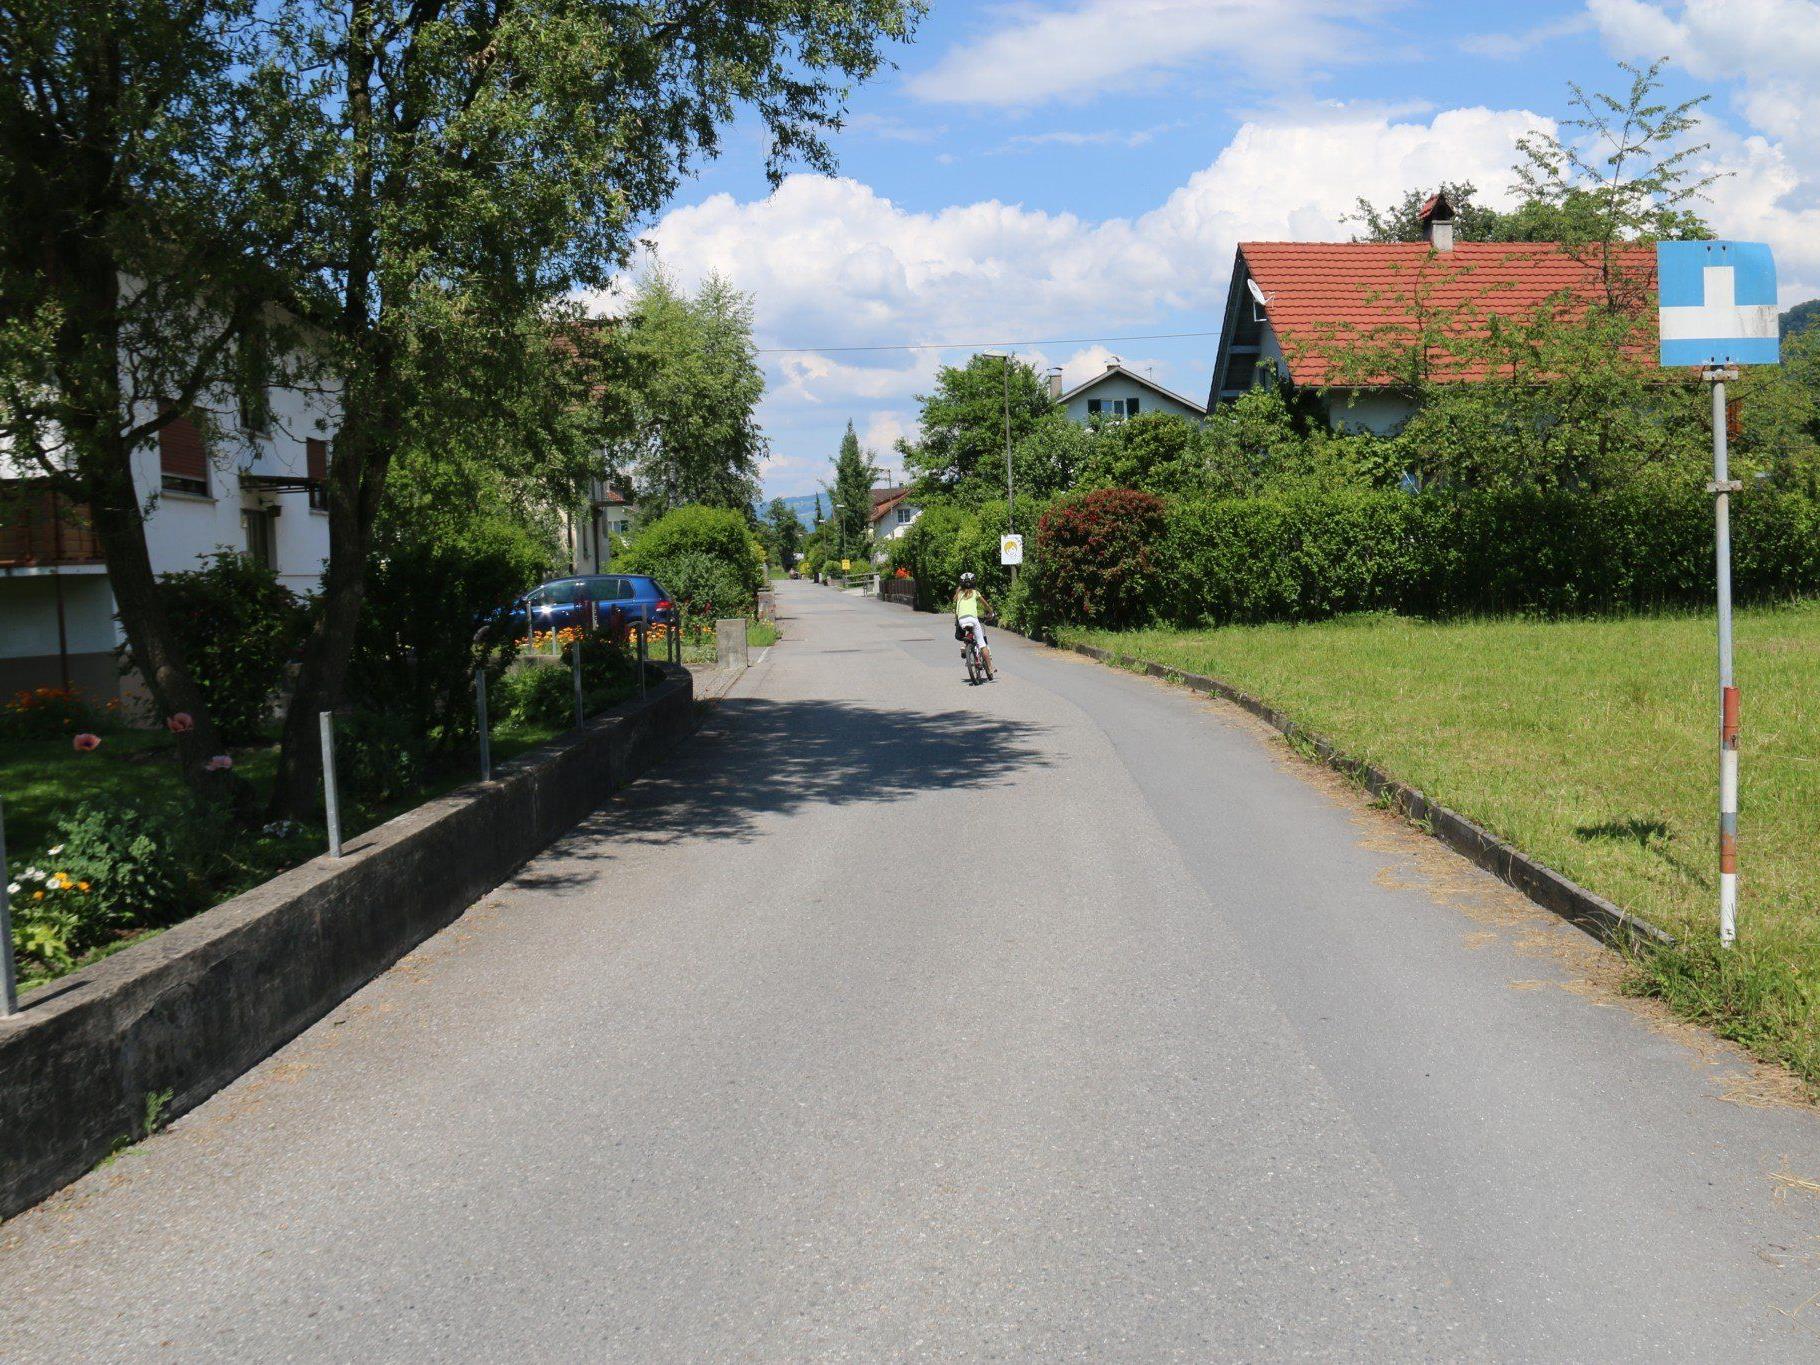 VOL.AT stellt die Straßen in Vorarlbergs in einer großen Serie vor.